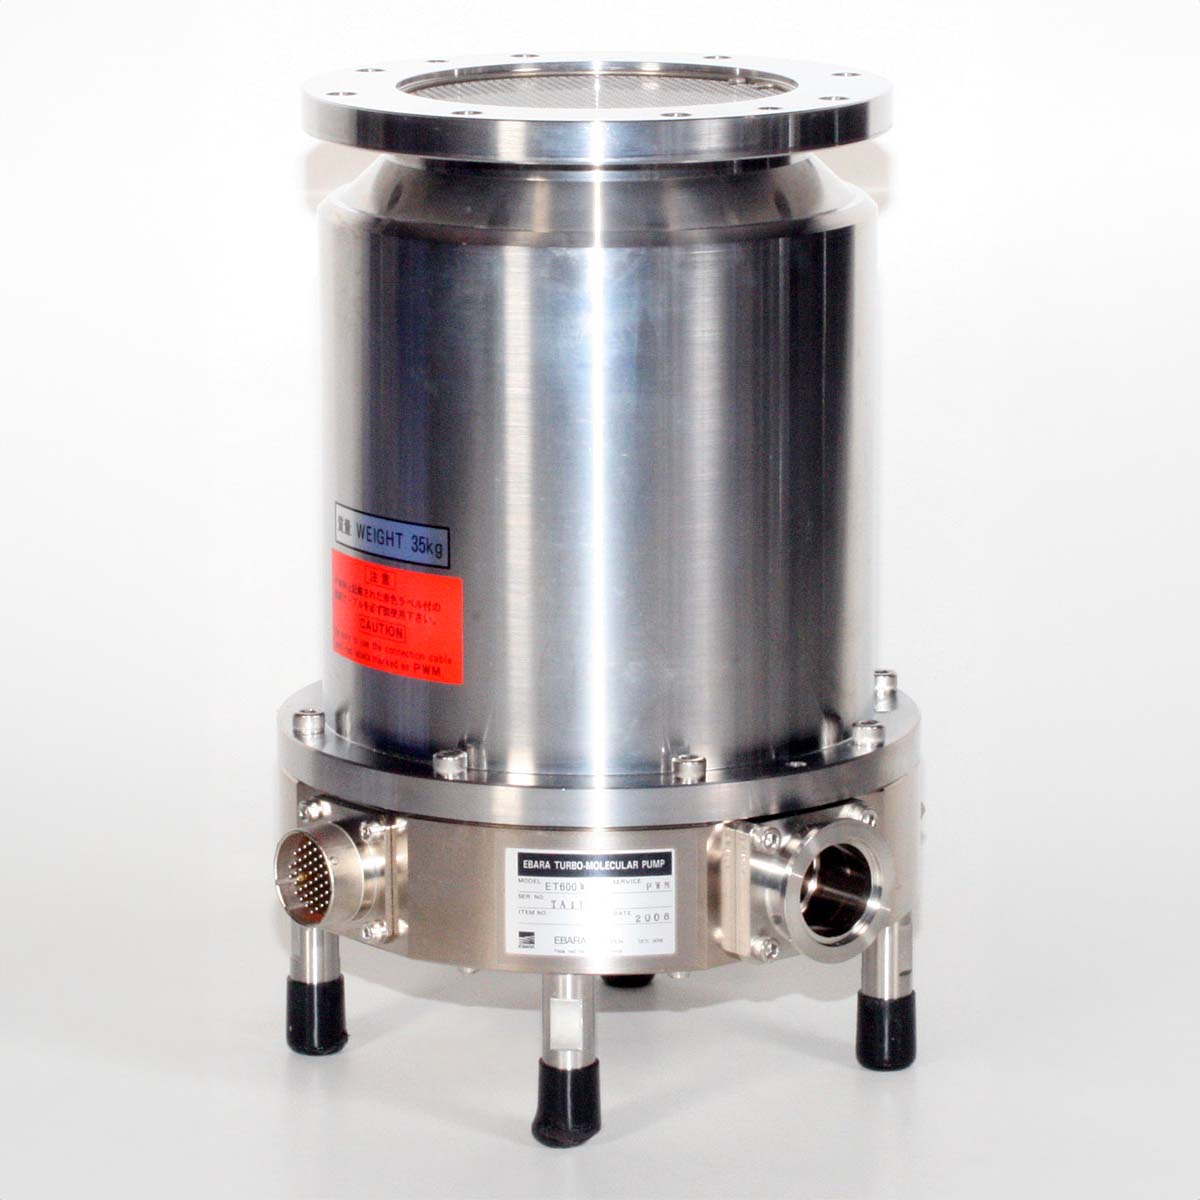 EBARA ET 600 W Turbomolecular Vacuum Pump - REBUILT